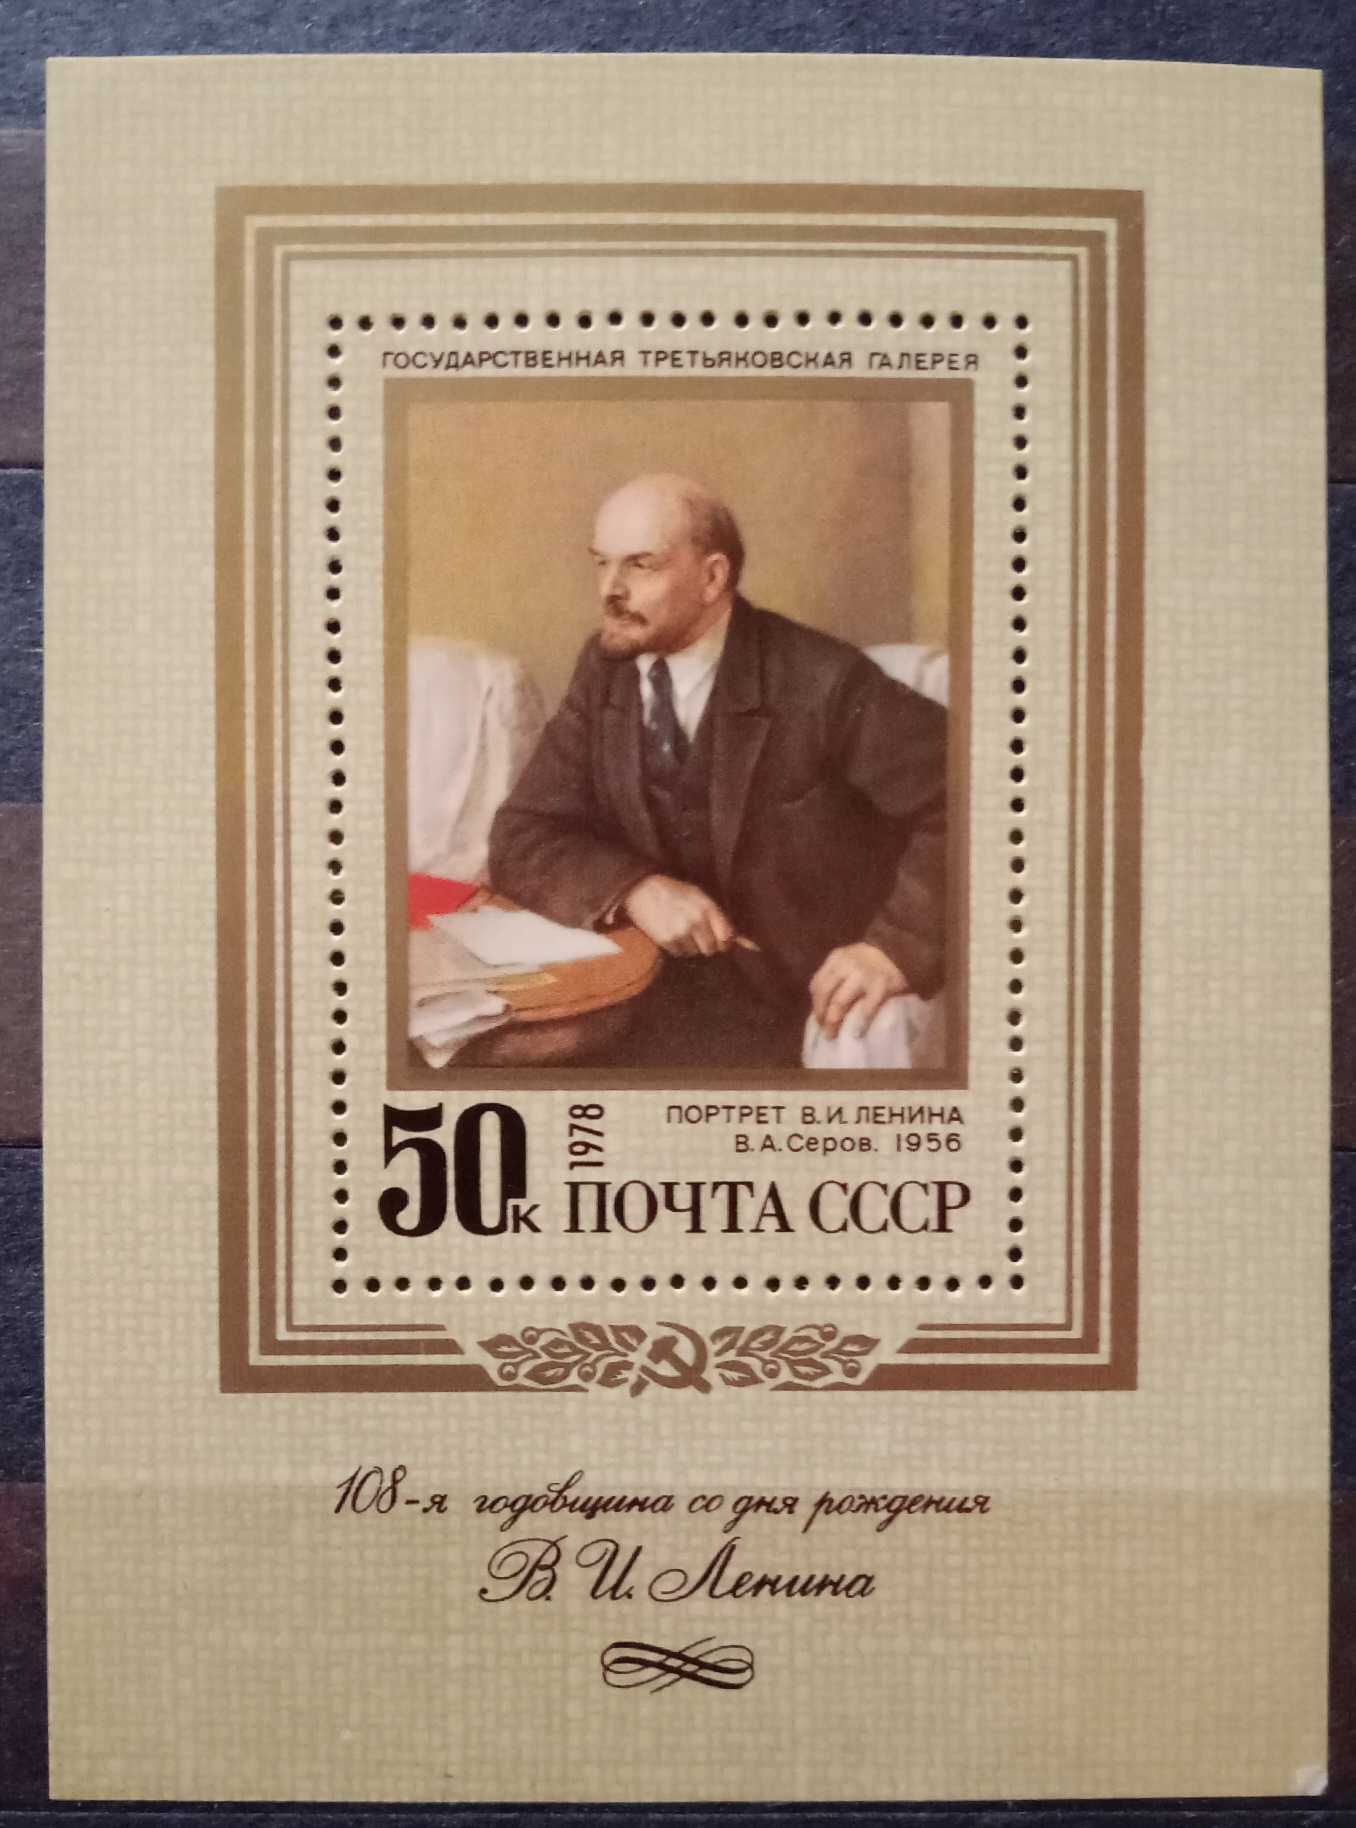 Серия почтовых марок СССР "Лениниада" и "Комунизм"